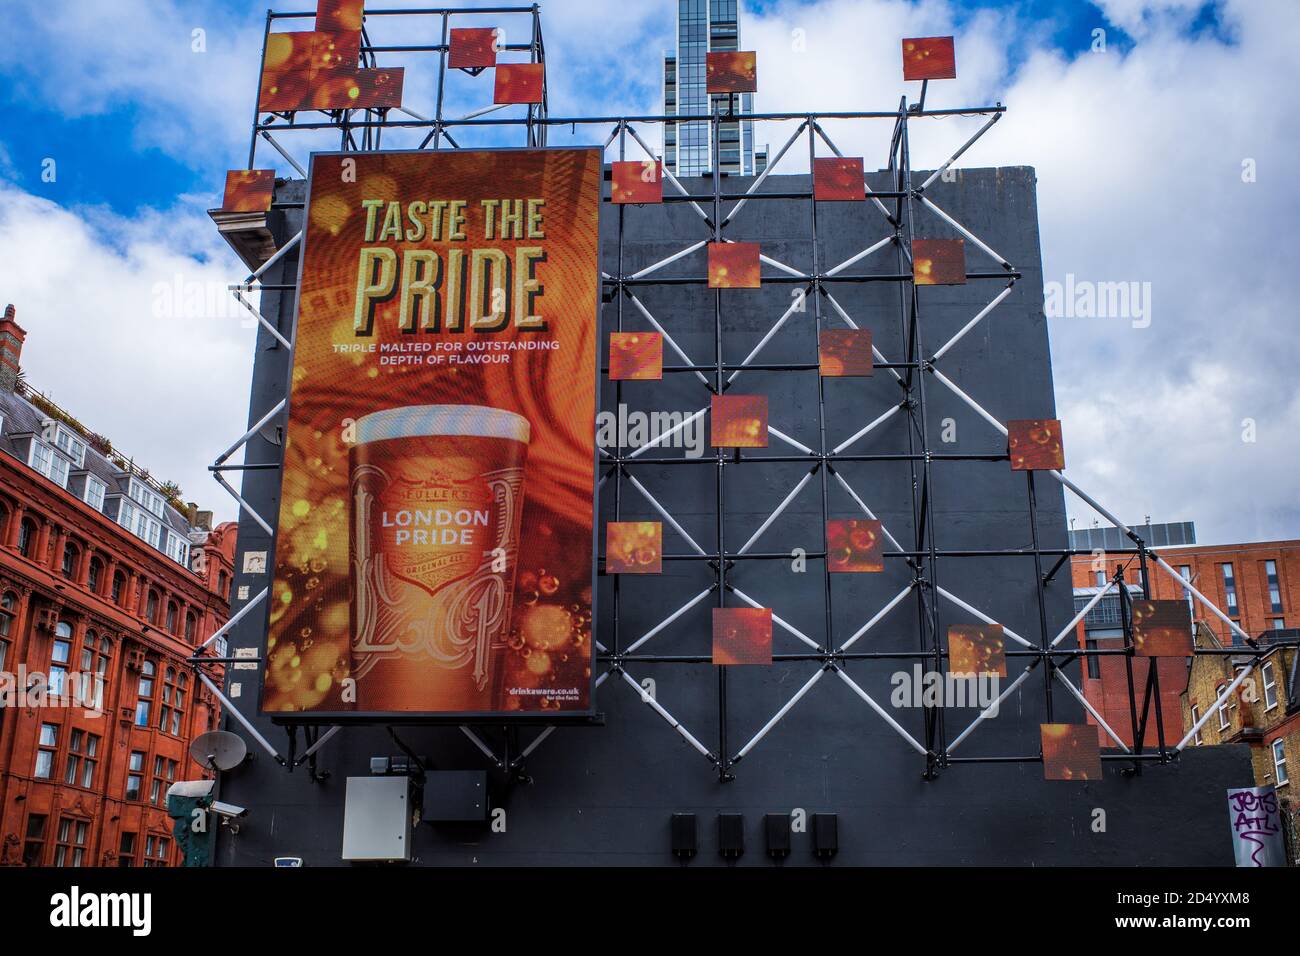 Werbung für London Pride Beer in der Nähe des Old Street Roundabout im Zentrum von London. Probieren Sie die Werbung „Pride“ Stockfoto